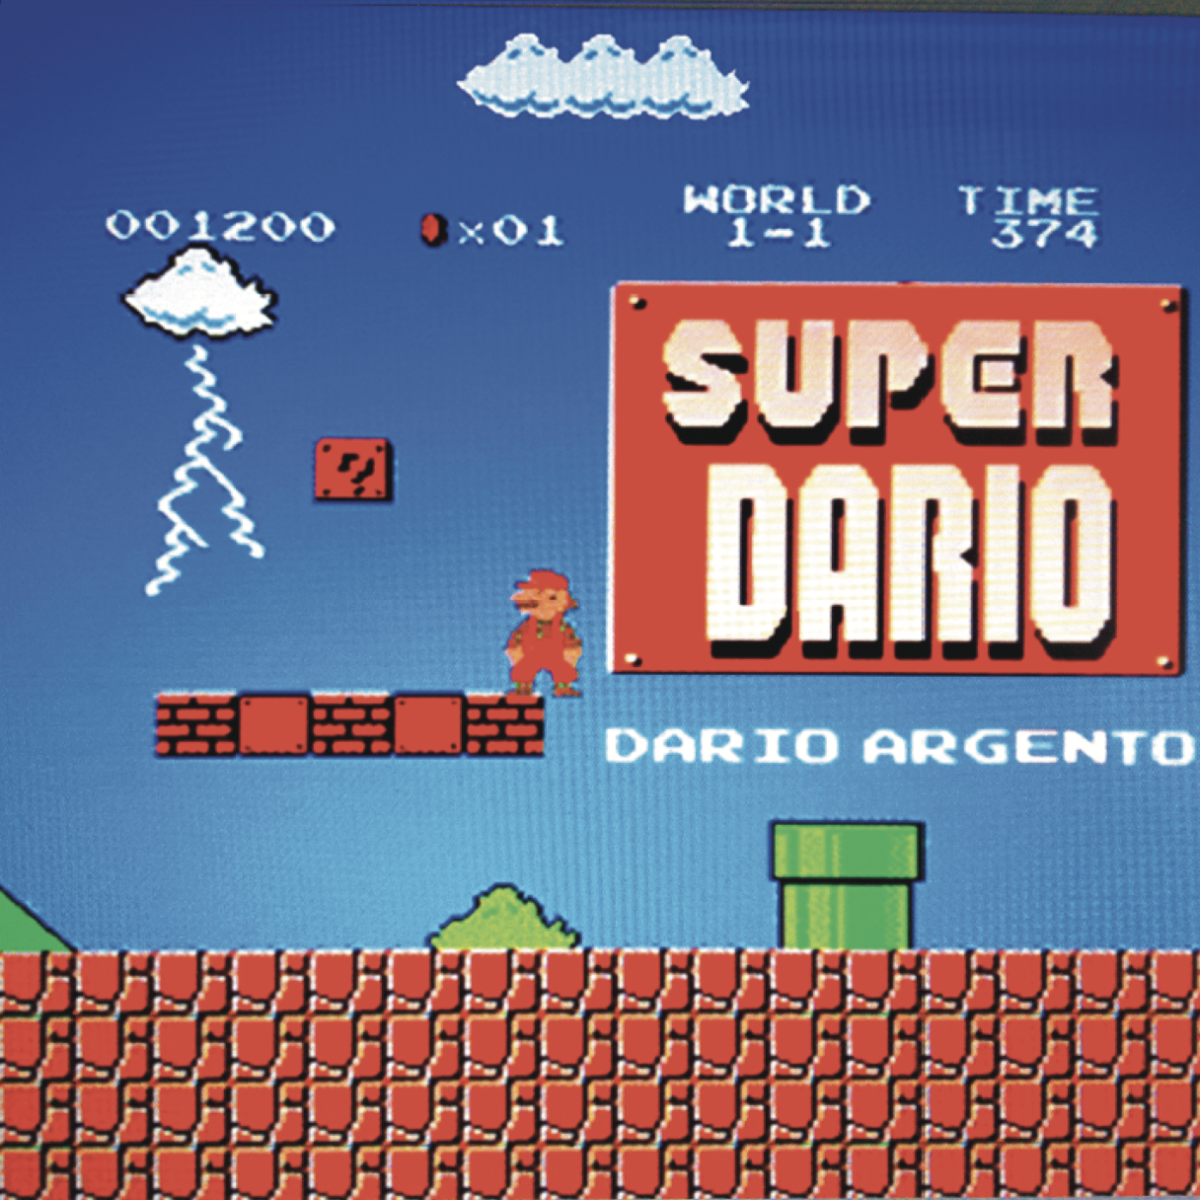 Cover della Super Dario Edition dei Goblin